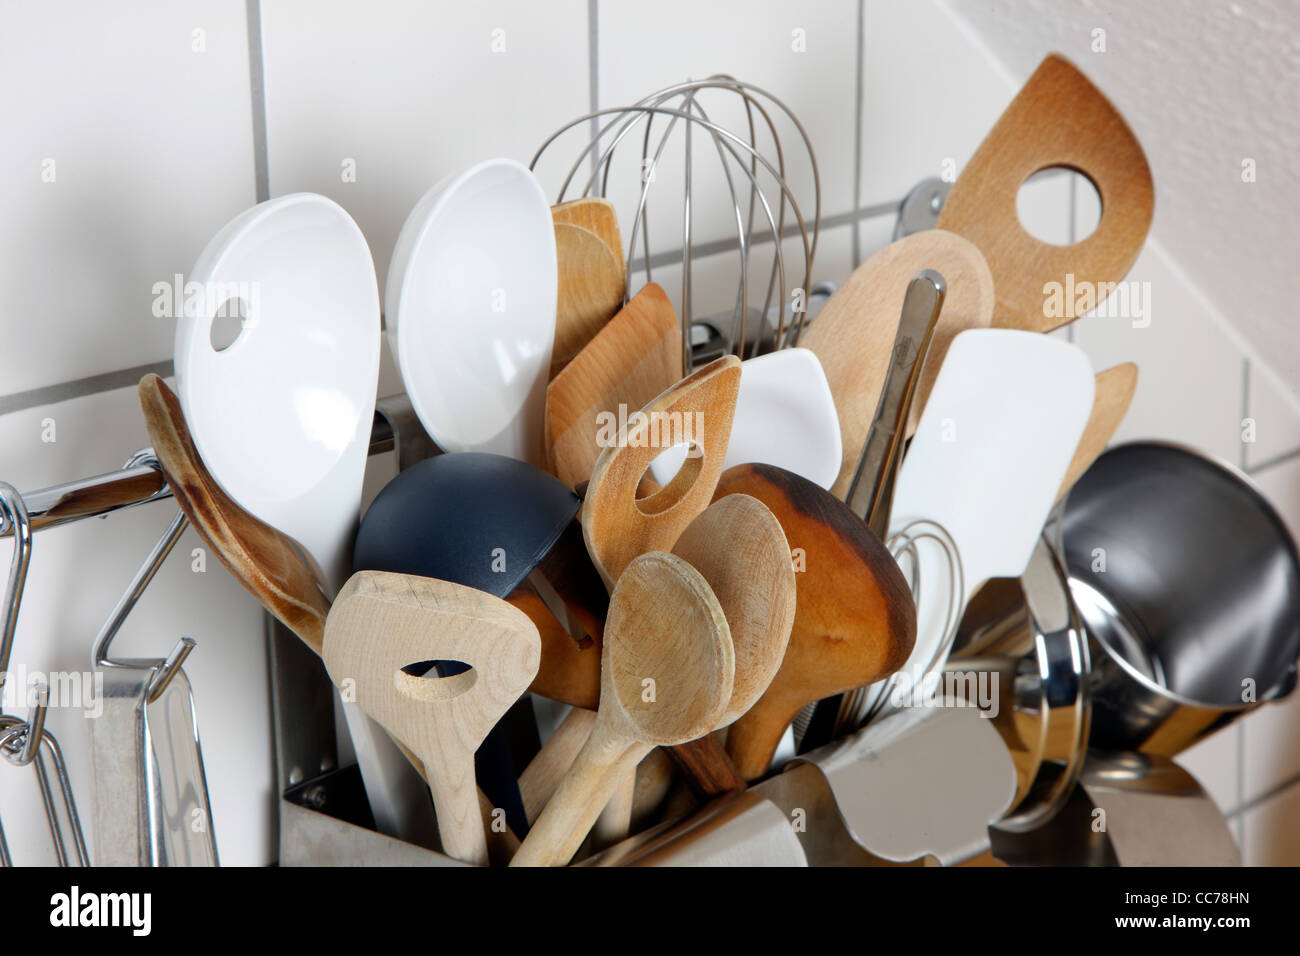 Diverse Küchenutensilien, Küchengeräte, box in einer Küche Stockfotografie  - Alamy